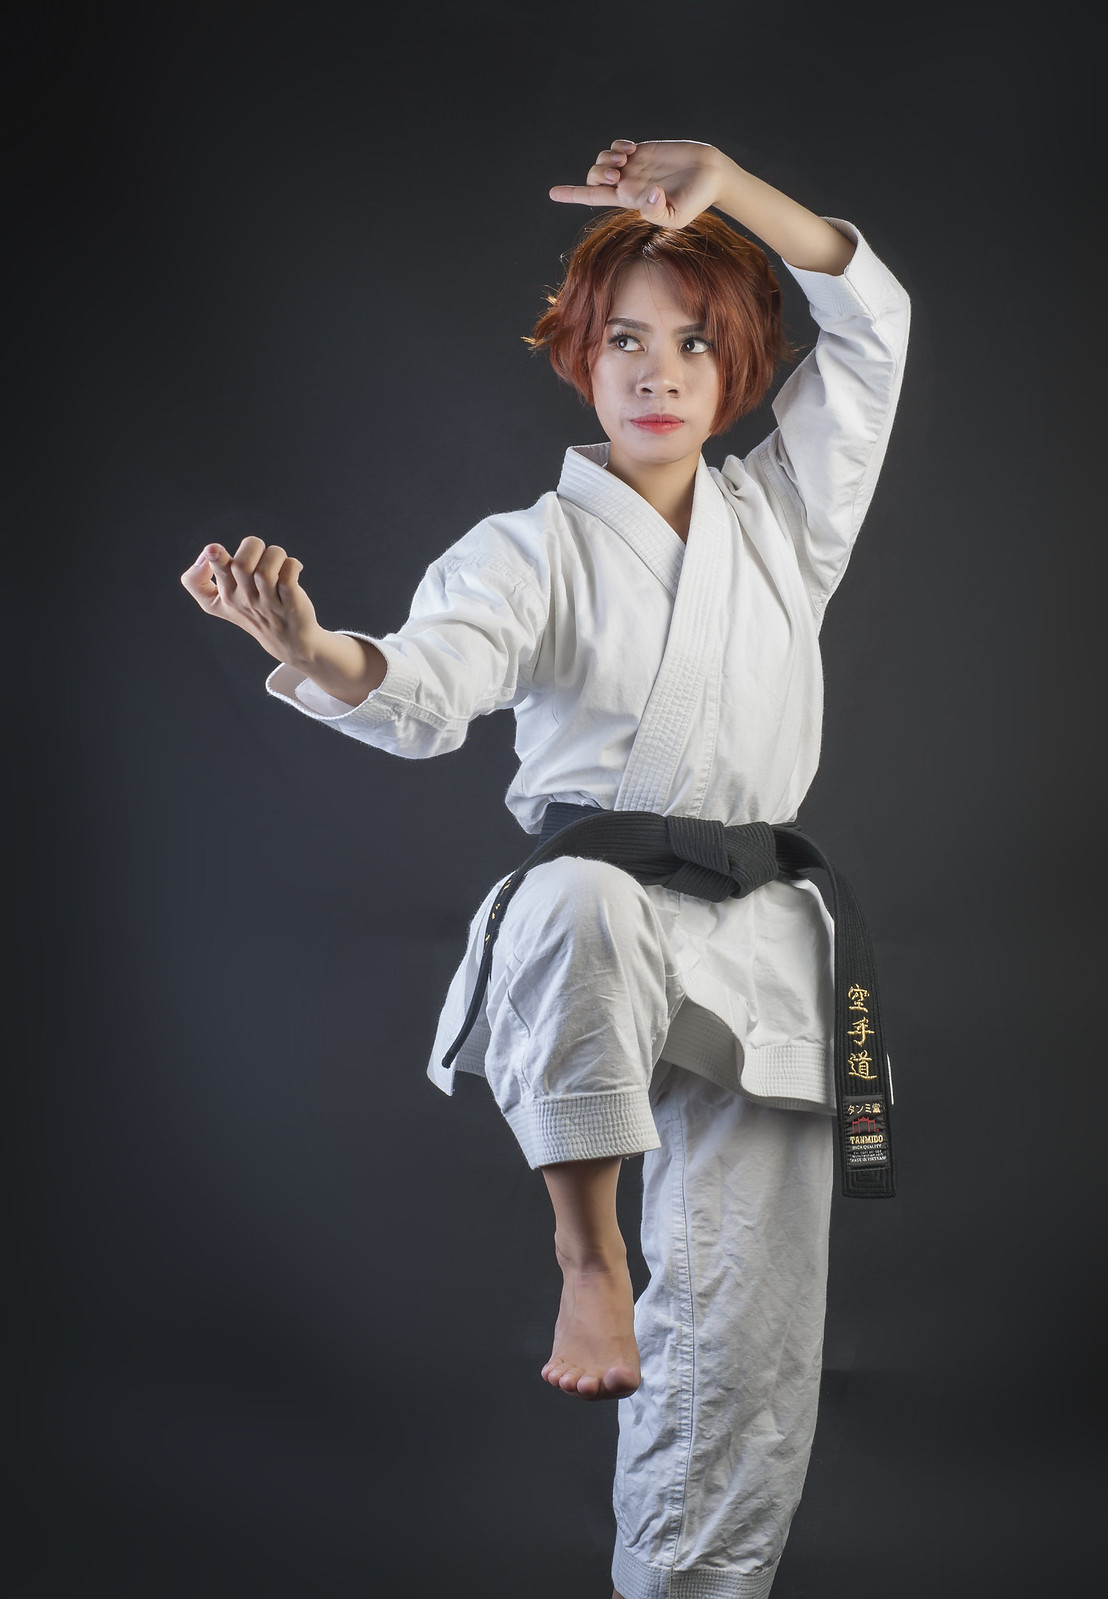 42980365941 1fe3beae61 h - Bộ ảnh võ thuật Karate Girl phiên bản Việt